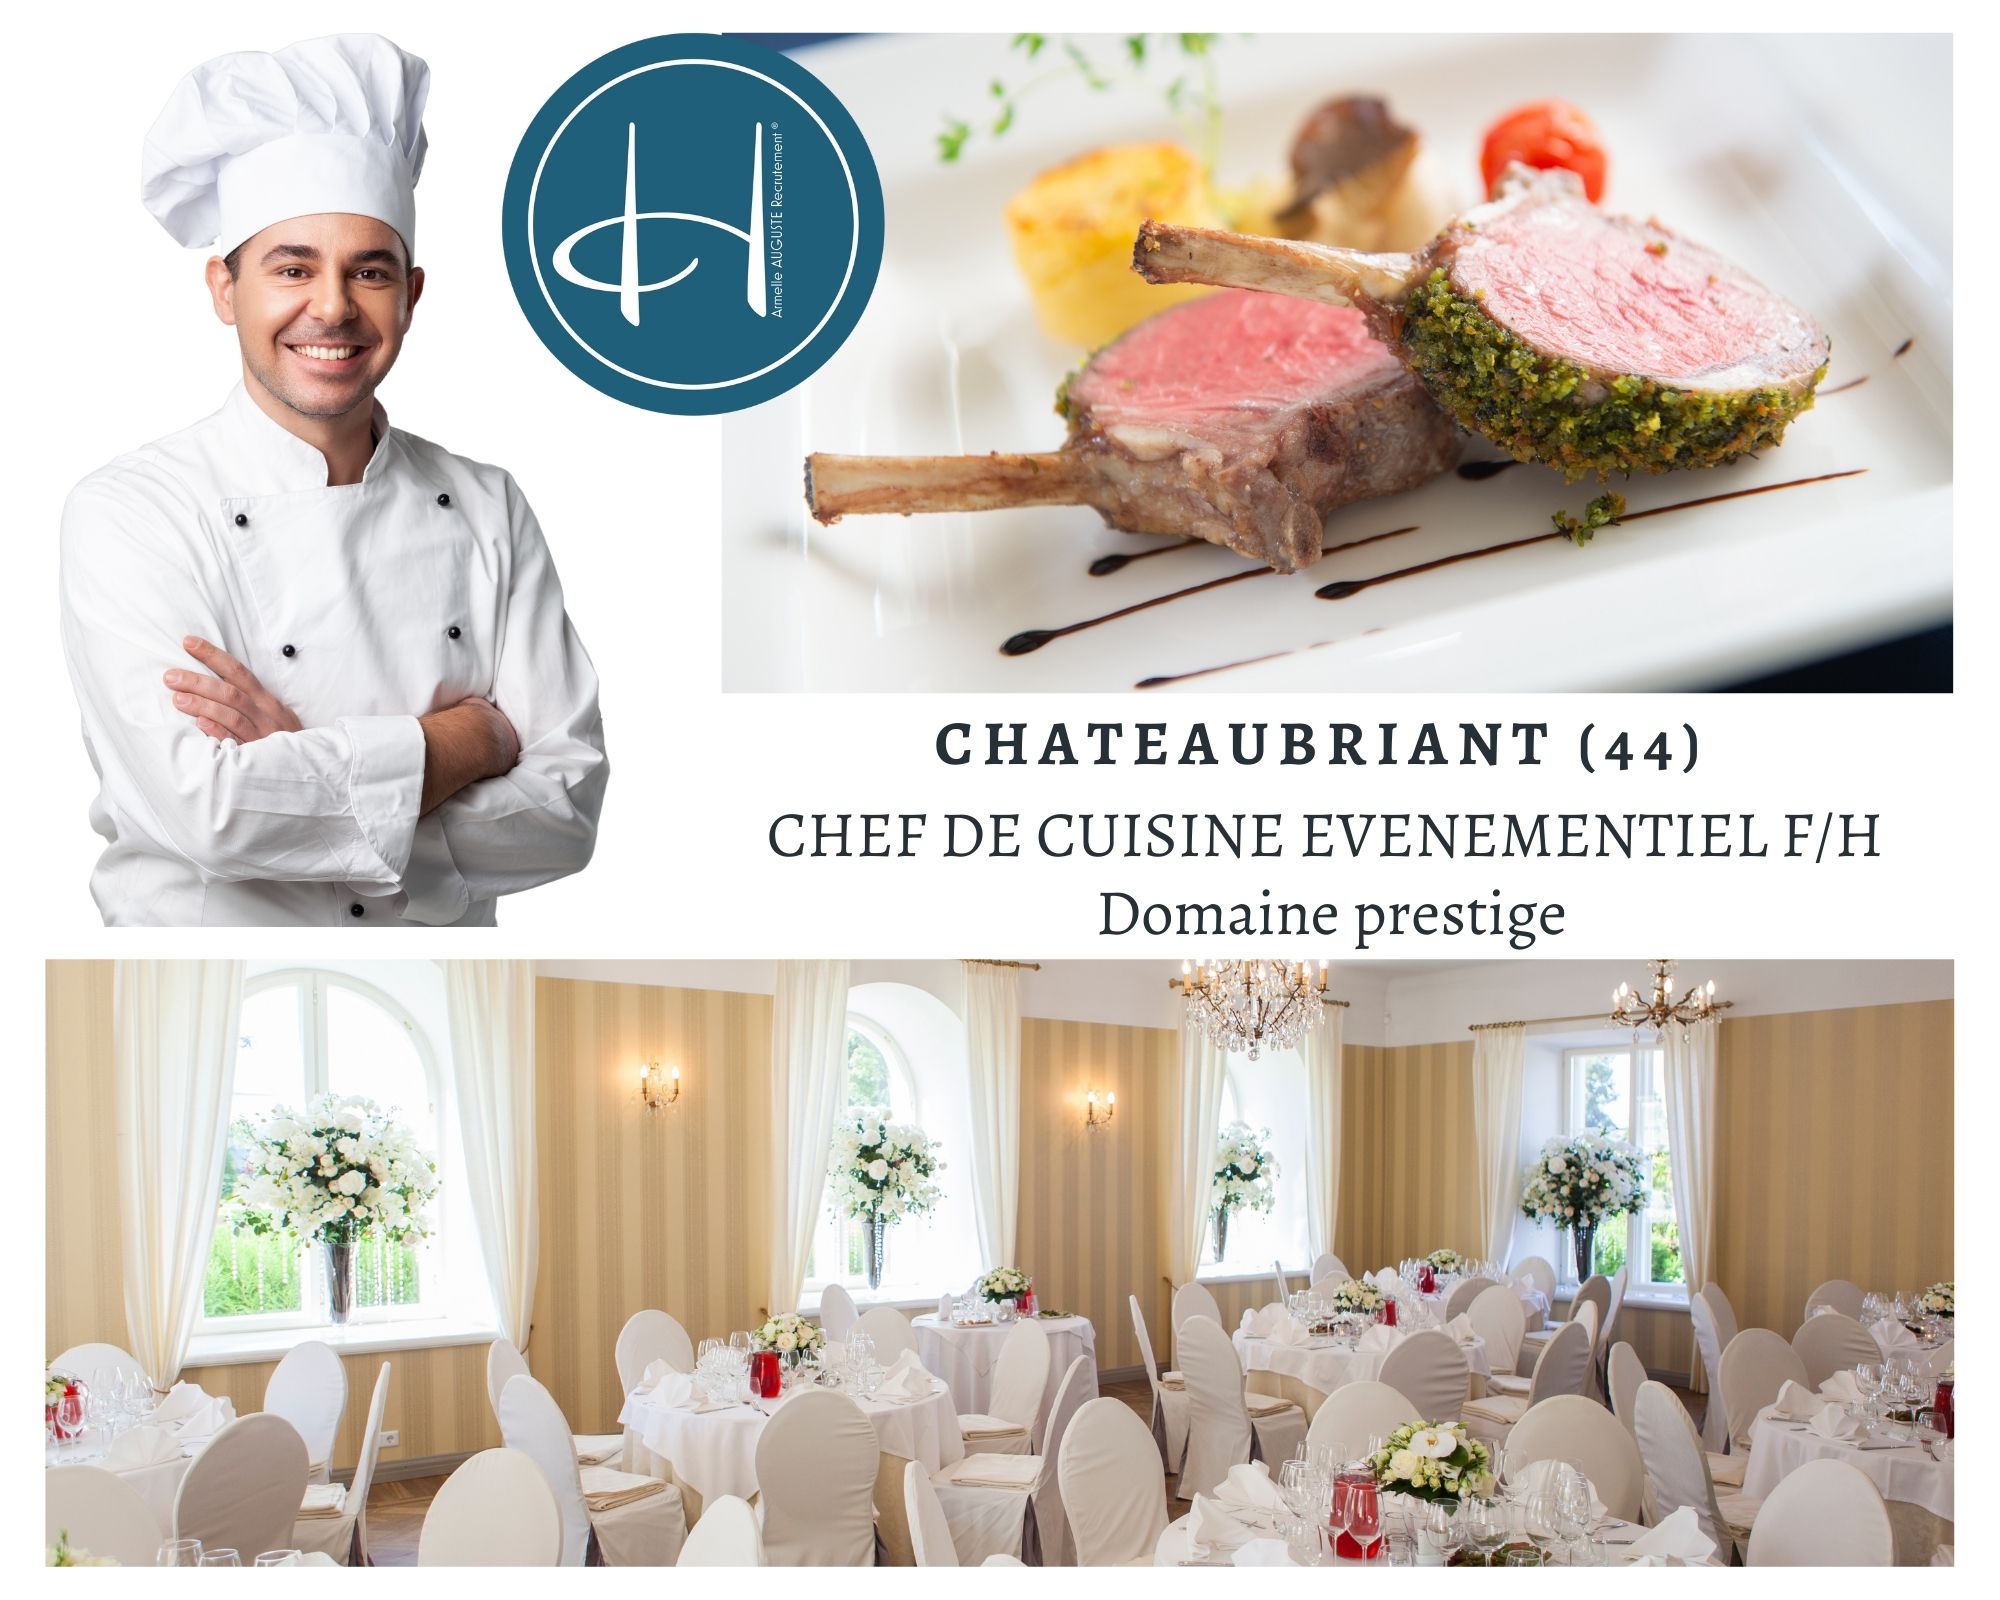 Recrutement: Chef de cuisine évènementiel domaine prestige F/H chez Armelle AUGUSTE Recrutement® à Châteaubriant